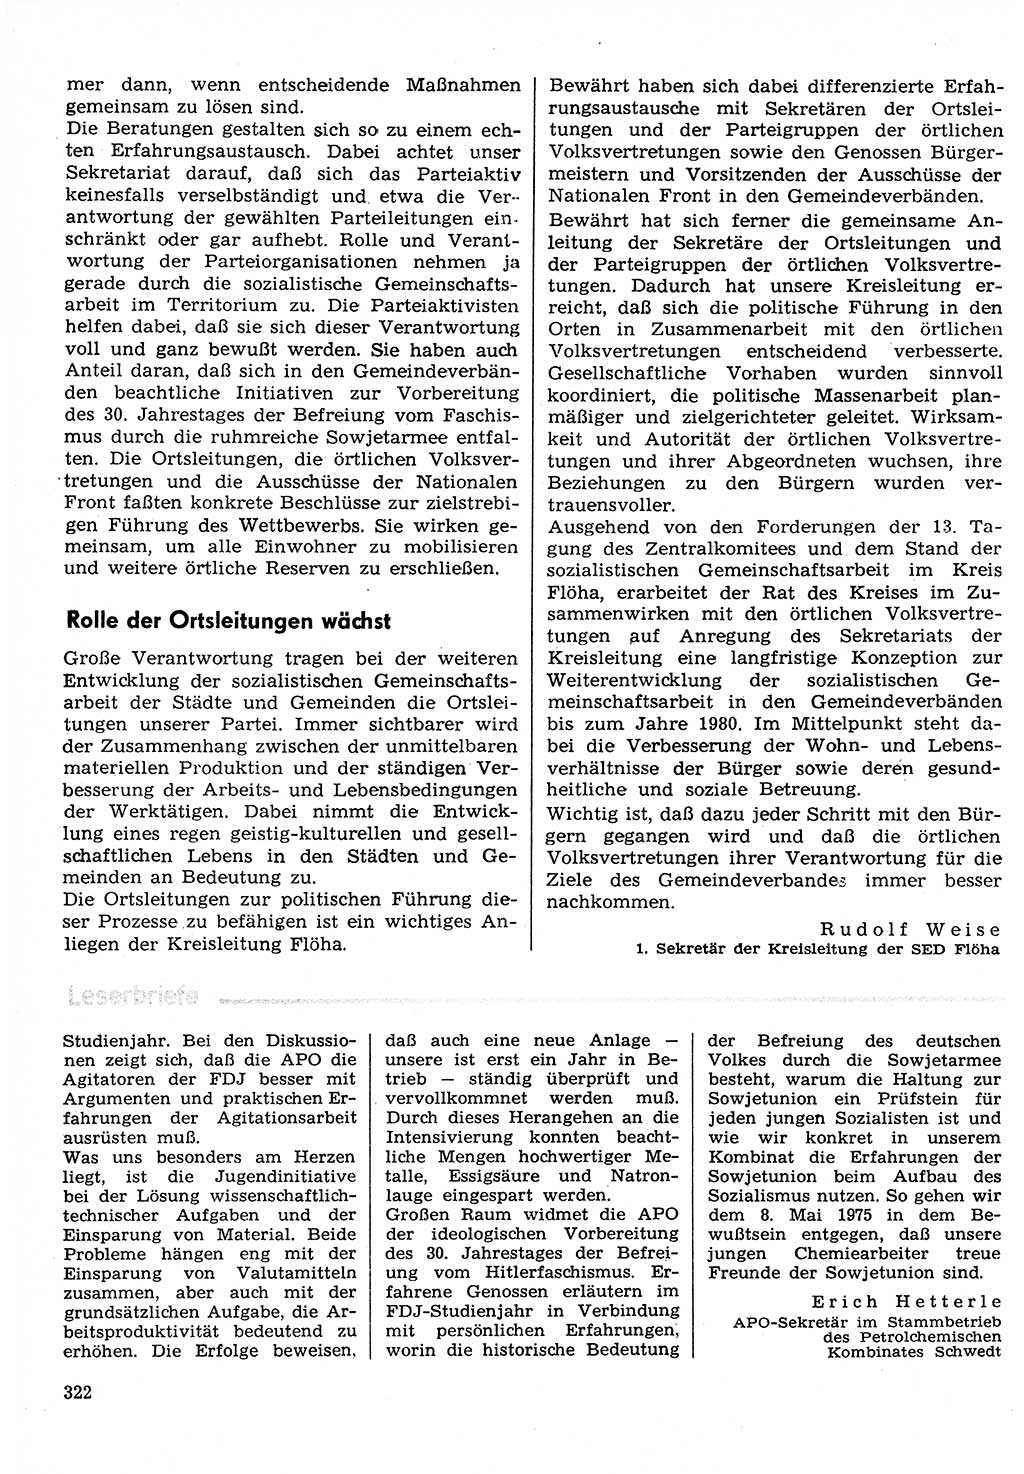 Neuer Weg (NW), Organ des Zentralkomitees (ZK) der SED (Sozialistische Einheitspartei Deutschlands) für Fragen des Parteilebens, 30. Jahrgang [Deutsche Demokratische Republik (DDR)] 1975, Seite 322 (NW ZK SED DDR 1975, S. 322)